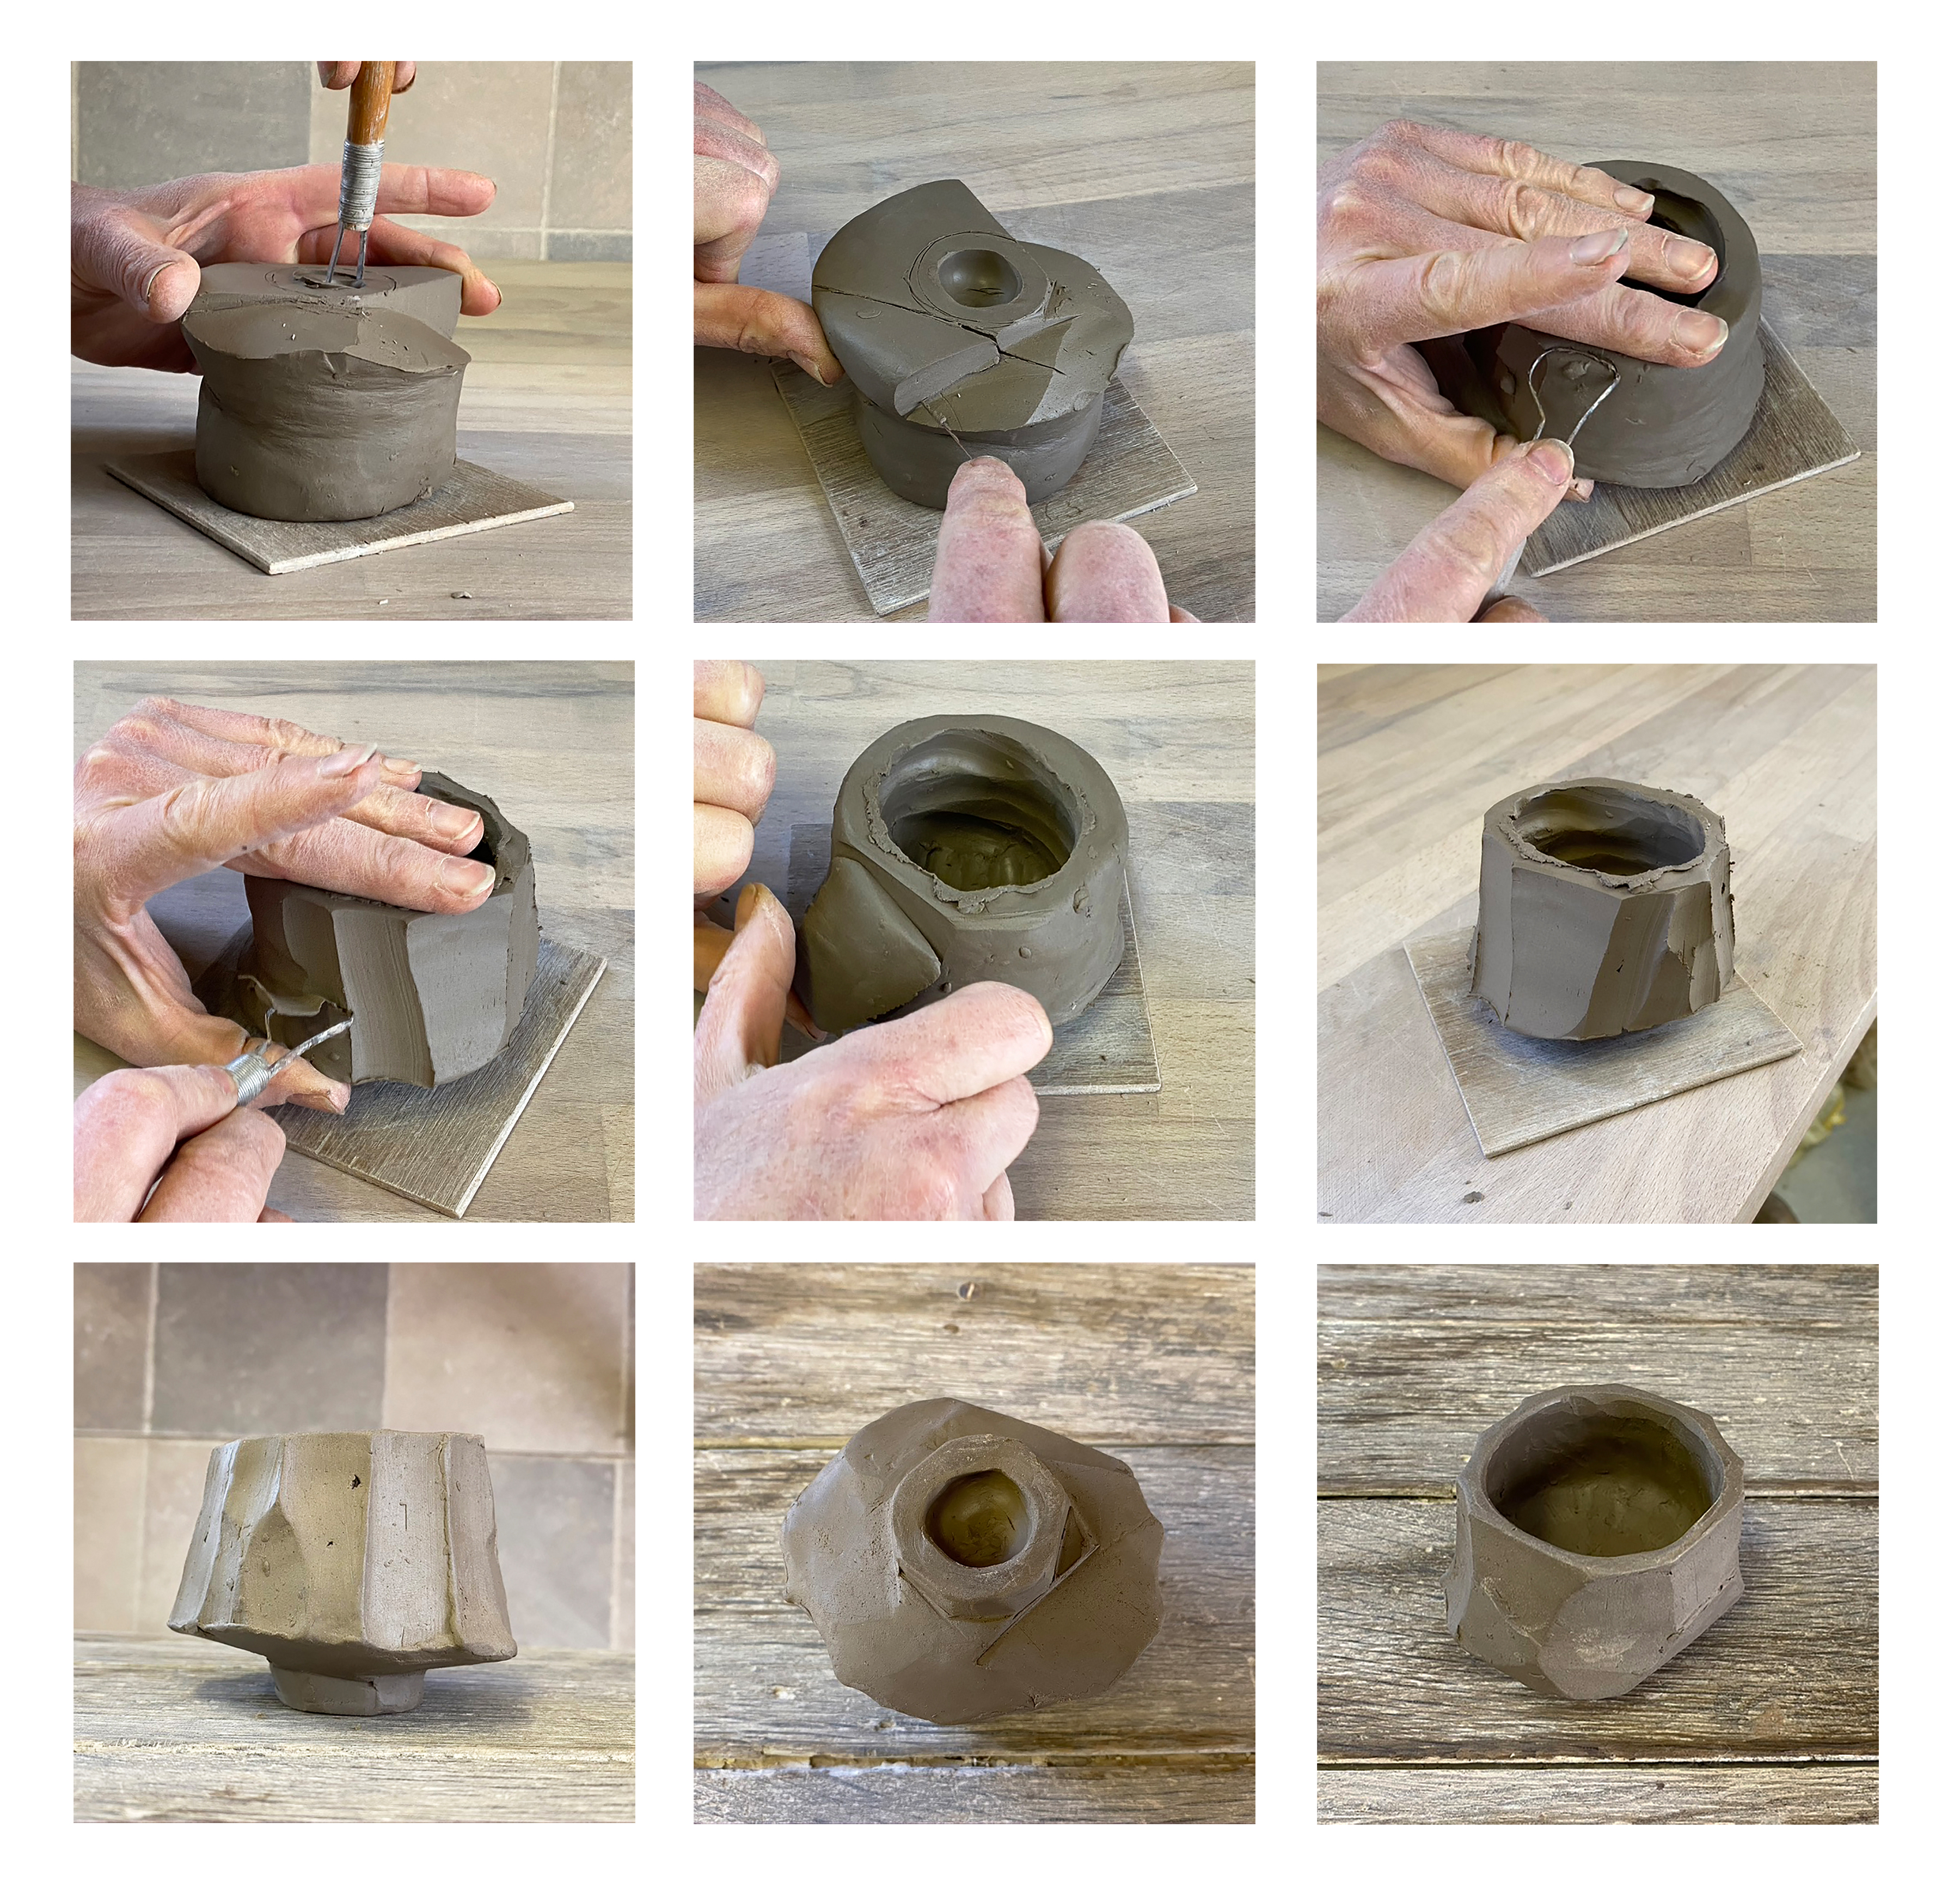 Best Basic Pottery Starter Kit for Beginners: Guide to world of